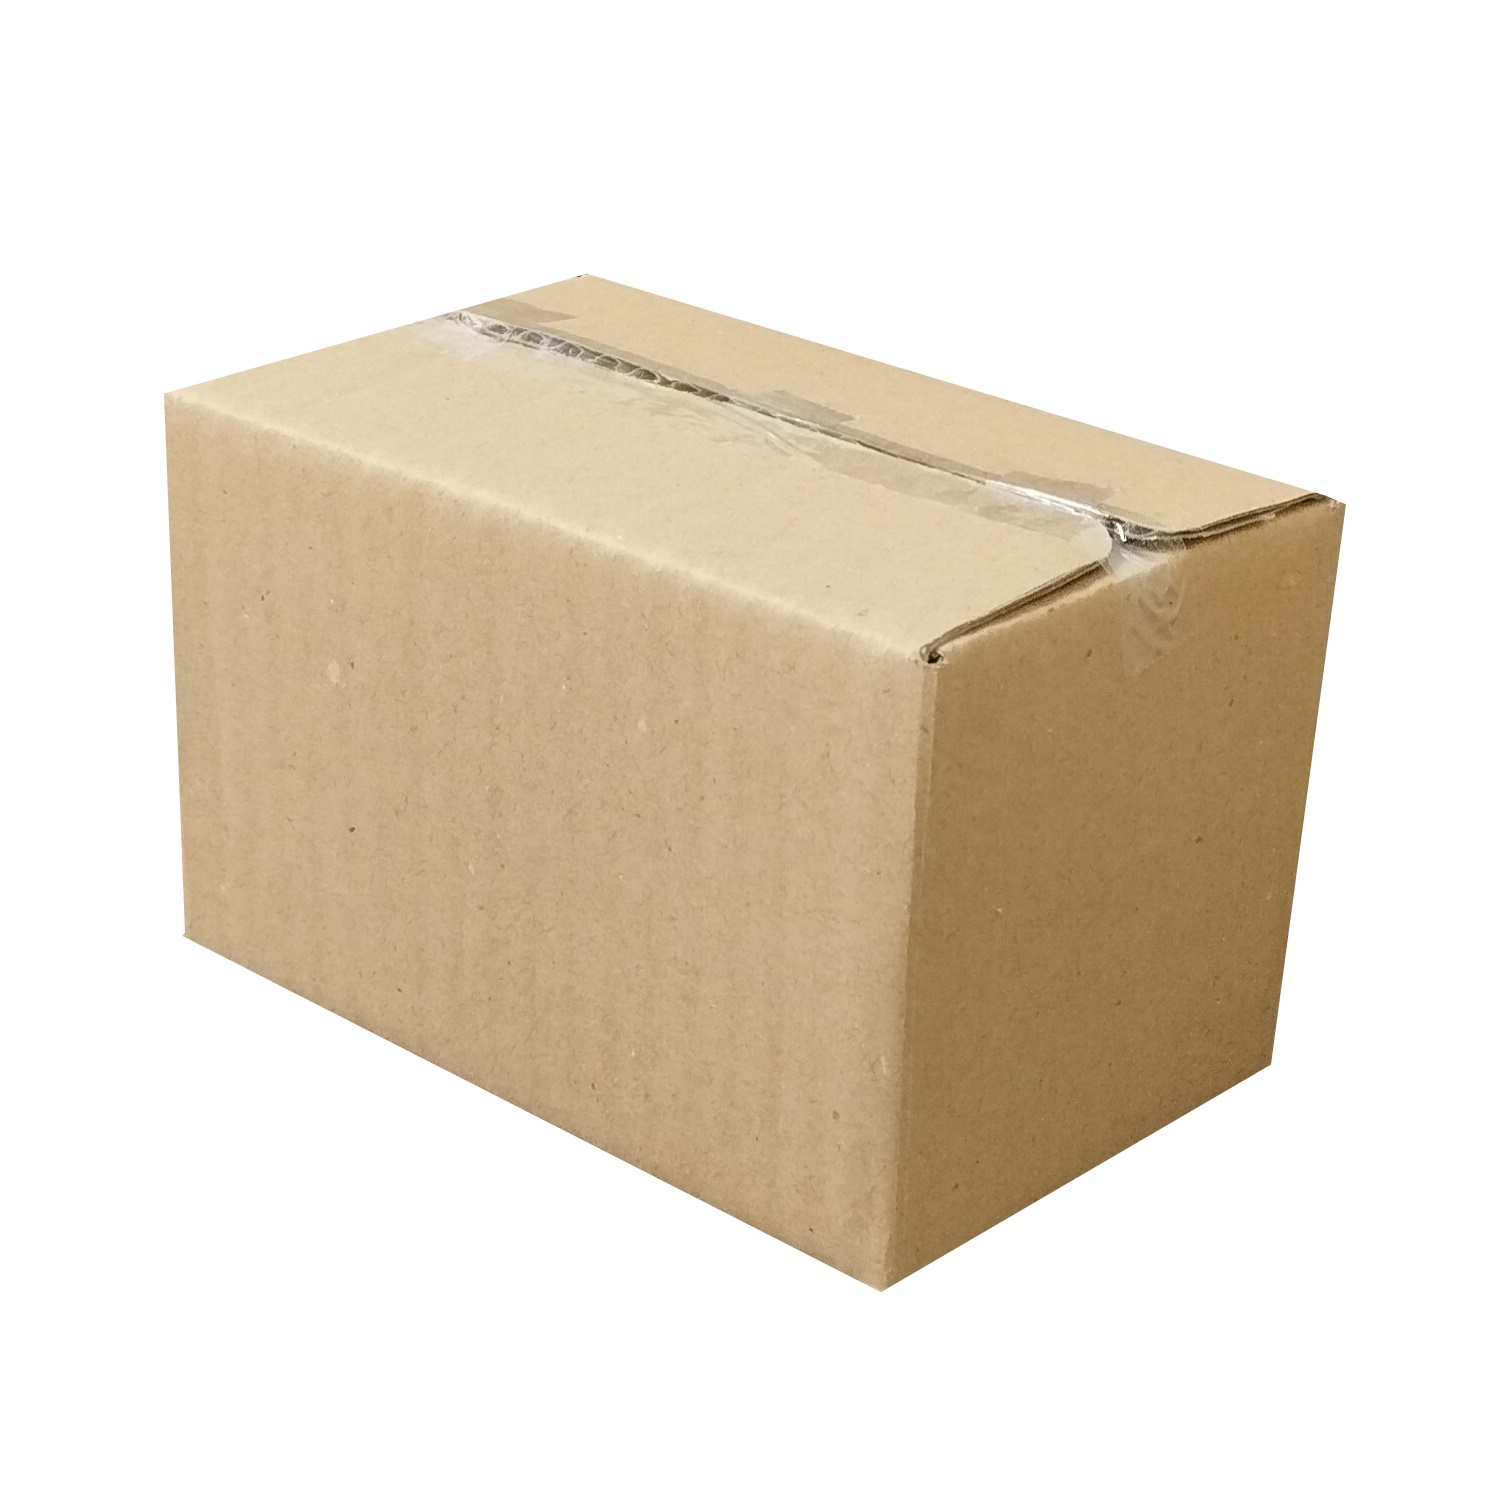 جعبه بسته بندی مدل cc1 بسته 120 عددی